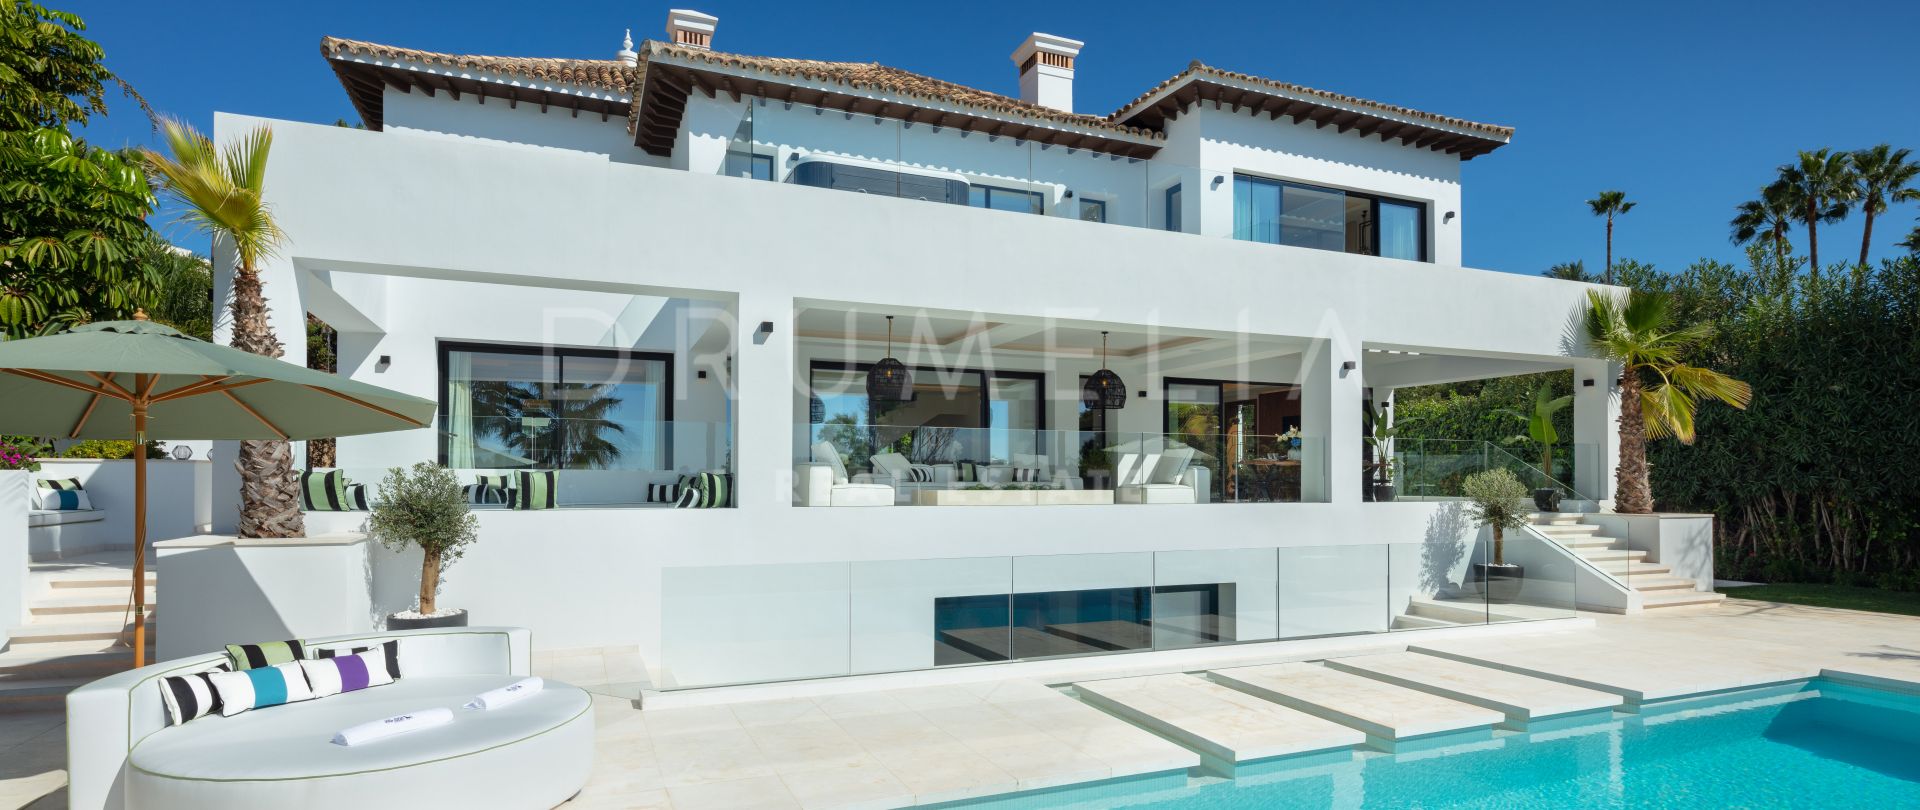 Villa 1000 - Sofisticada y moderna villa de lujo en primera línea de golf, Nueva Andalucía